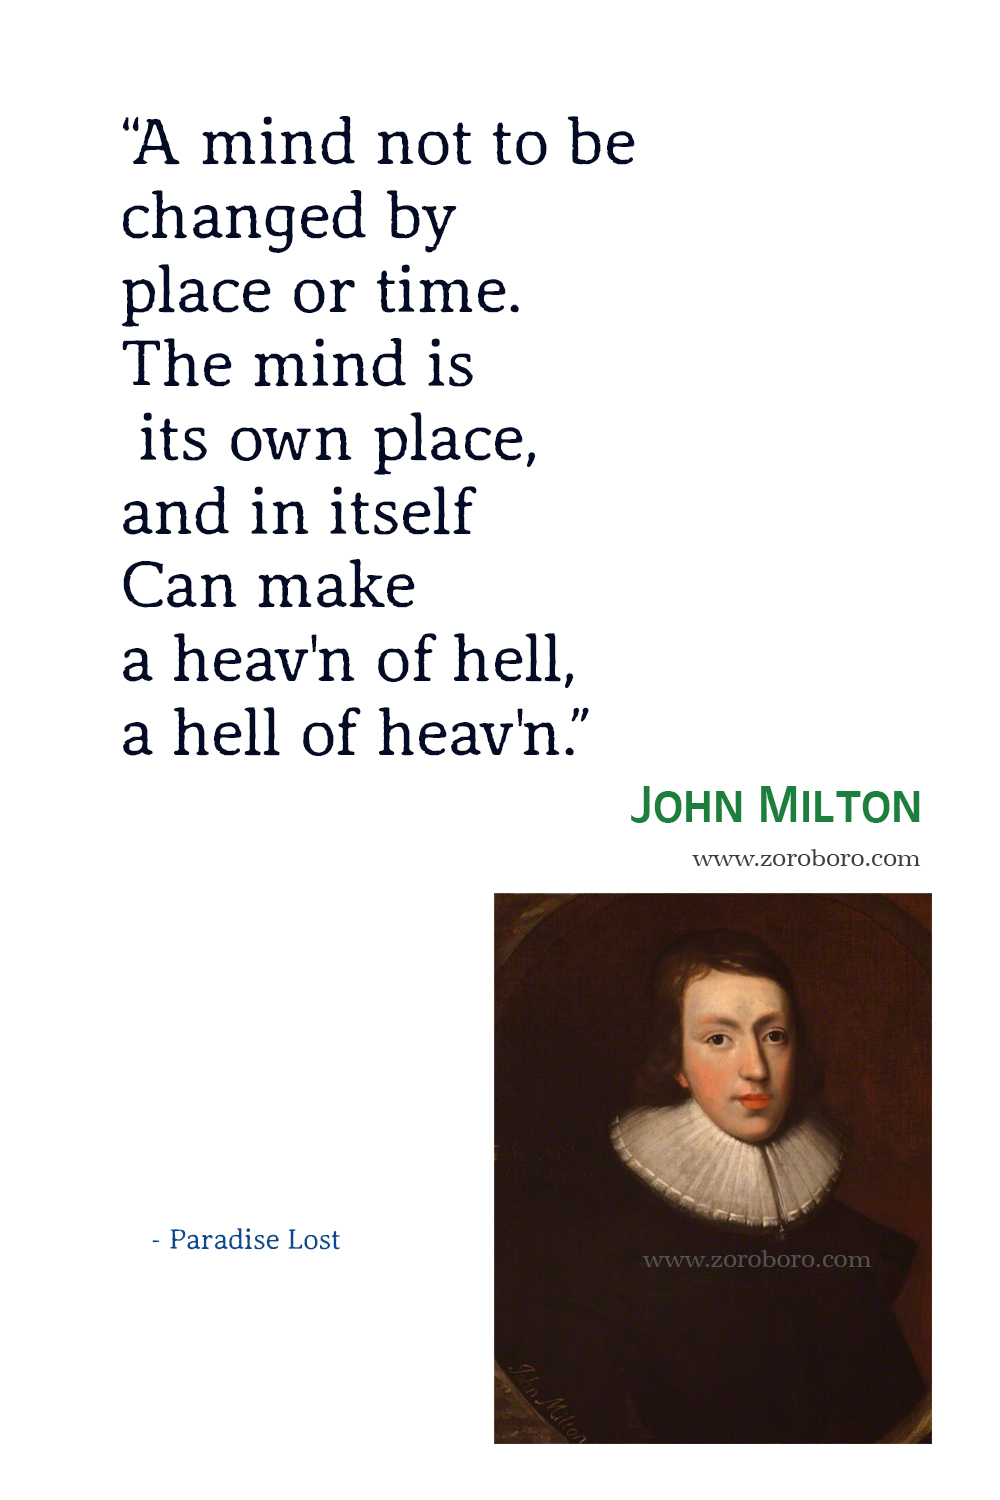 John Milton Quotes, John Milton Paradise Lost Quotes, John Milton Poems, John Milton Poetry, John Milton Books, John Milton Quotes.